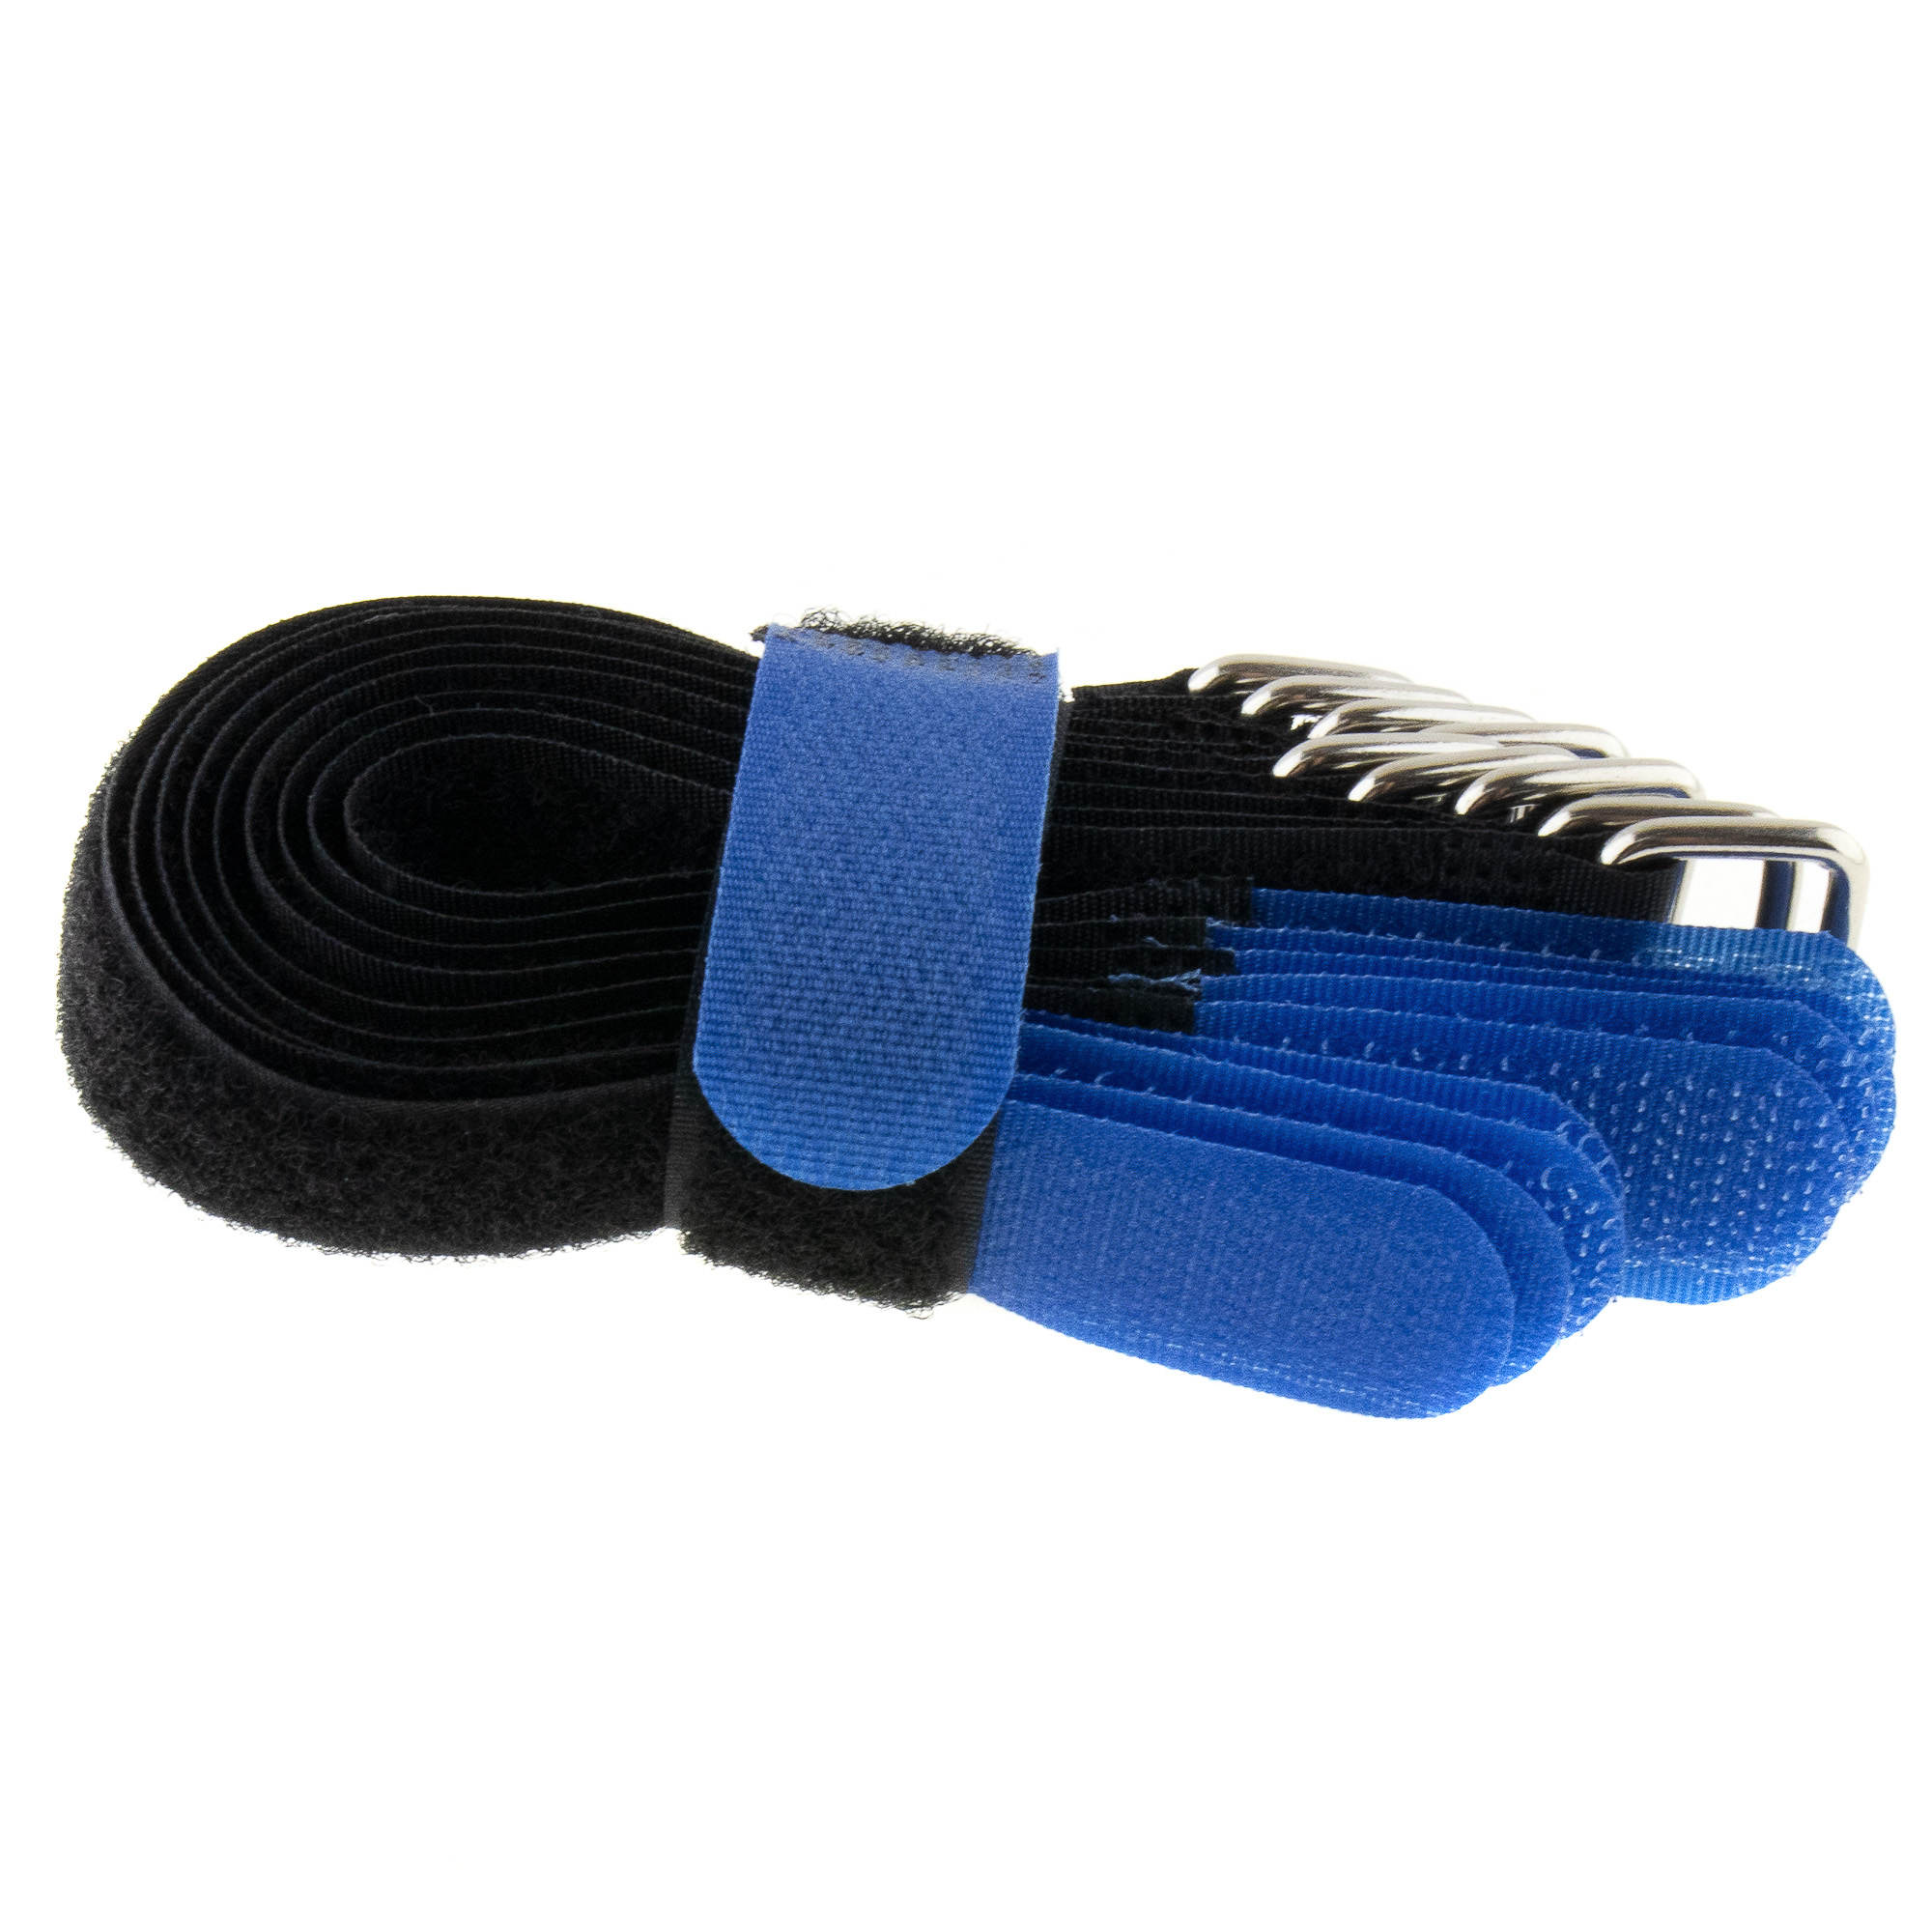 Hook-and-loop strap 200x20, black/blue, crossed, 10PCS